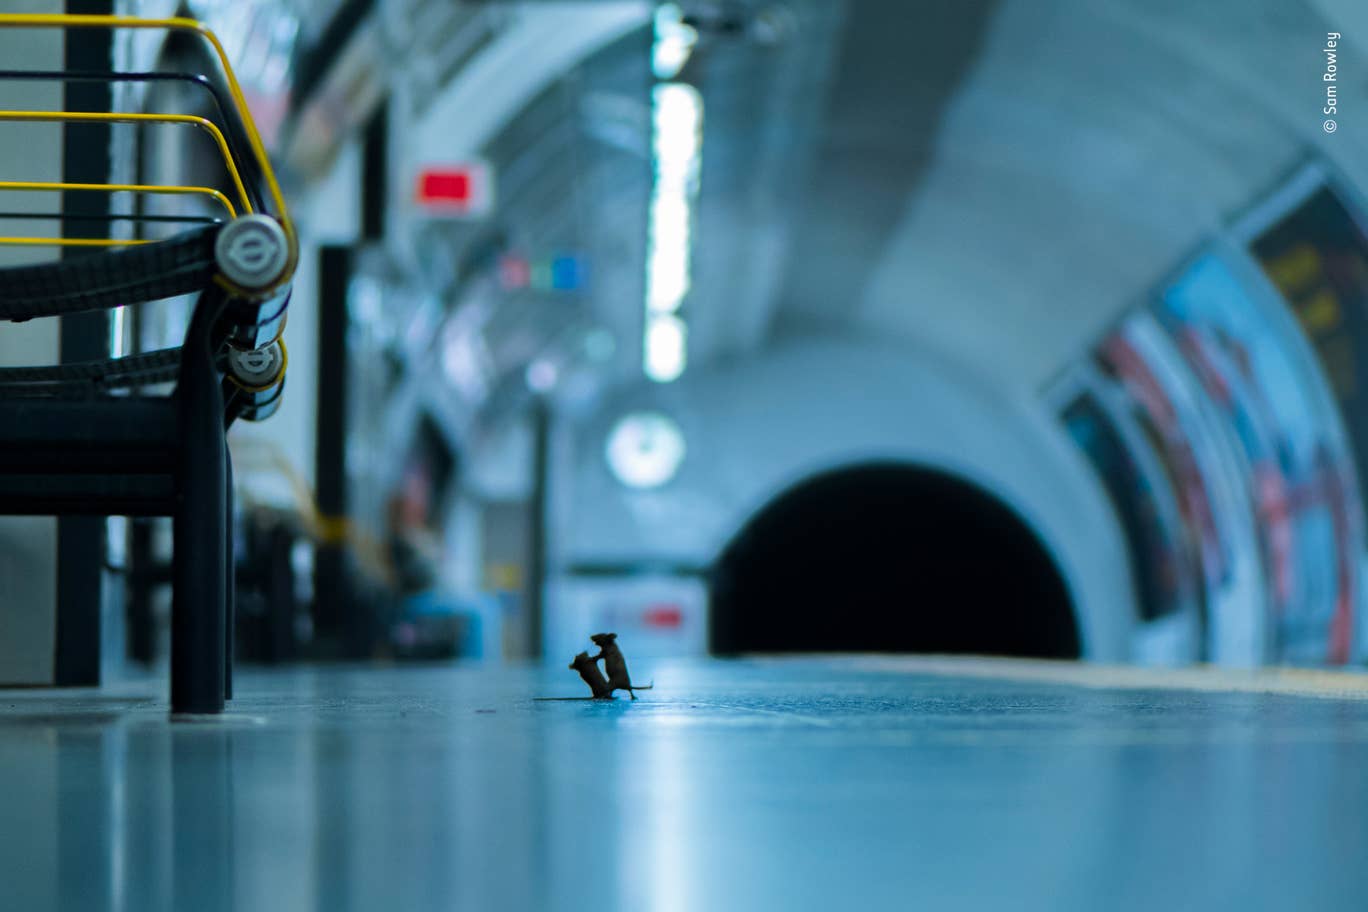 Фото року: знімок бійки мишей у лондонському метро обрали кращим, фото — Wildlife Photography of the Year 2019